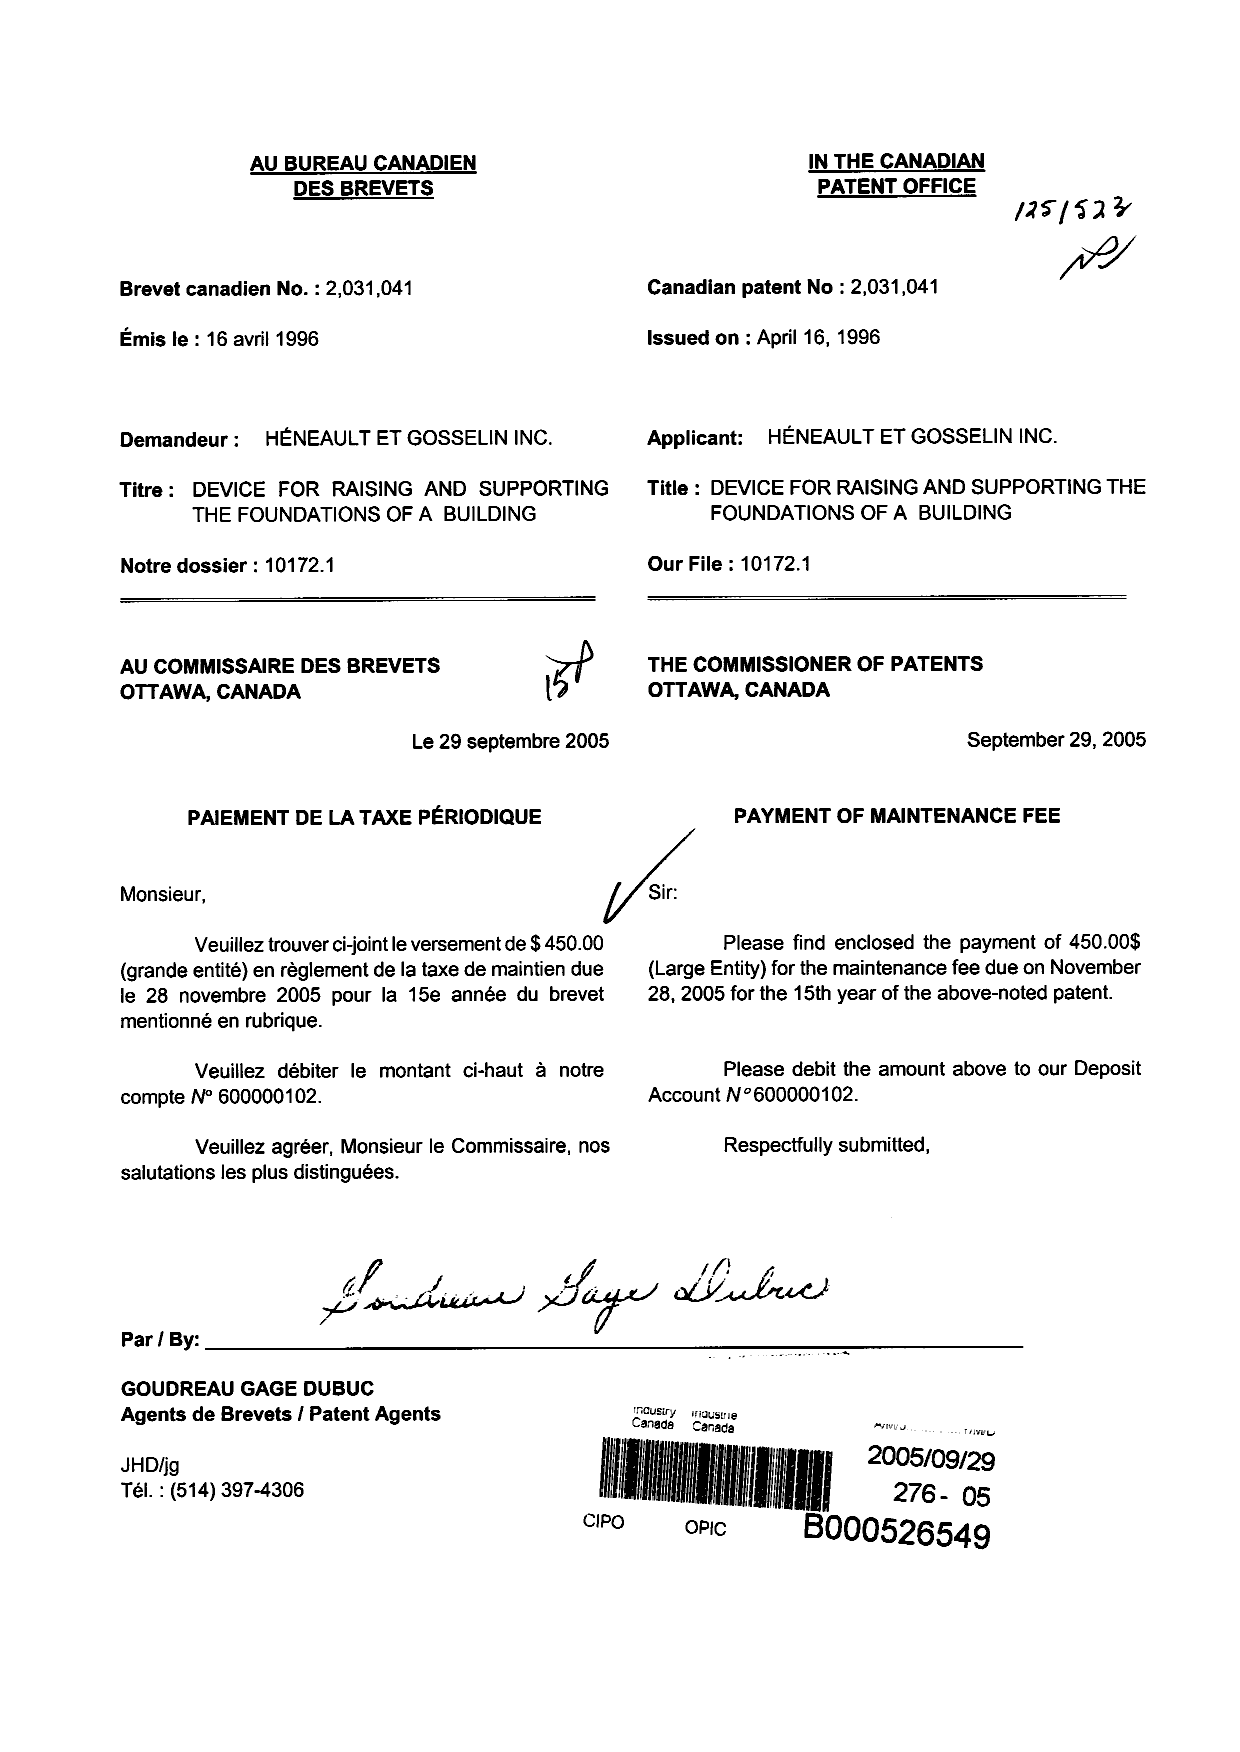 Document de brevet canadien 2031041. Taxes 20041229. Image 1 de 1